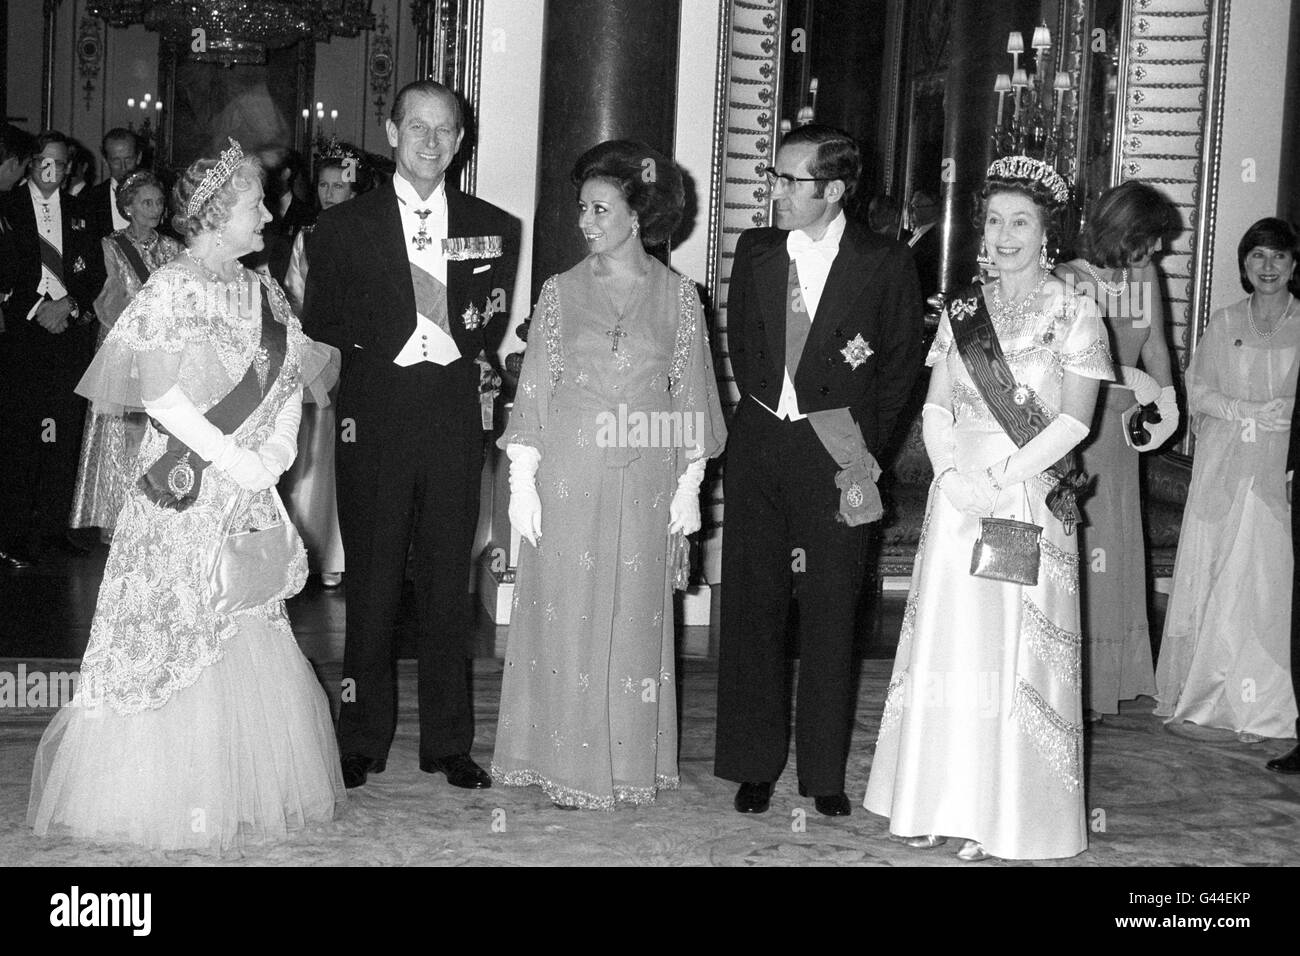 Präsident Ramahlo Eanes von Portugal und seine Frau Senhora Maria Eanes (Mitte Vordergrund) werden im Music Room des Buckingham Palace von der Königin, dem Herzog von Edinburgh und der Königin Mutter, bei einem Staatsbankett zu Ehren des Präsidenten zusammen gestellt. Stockfoto